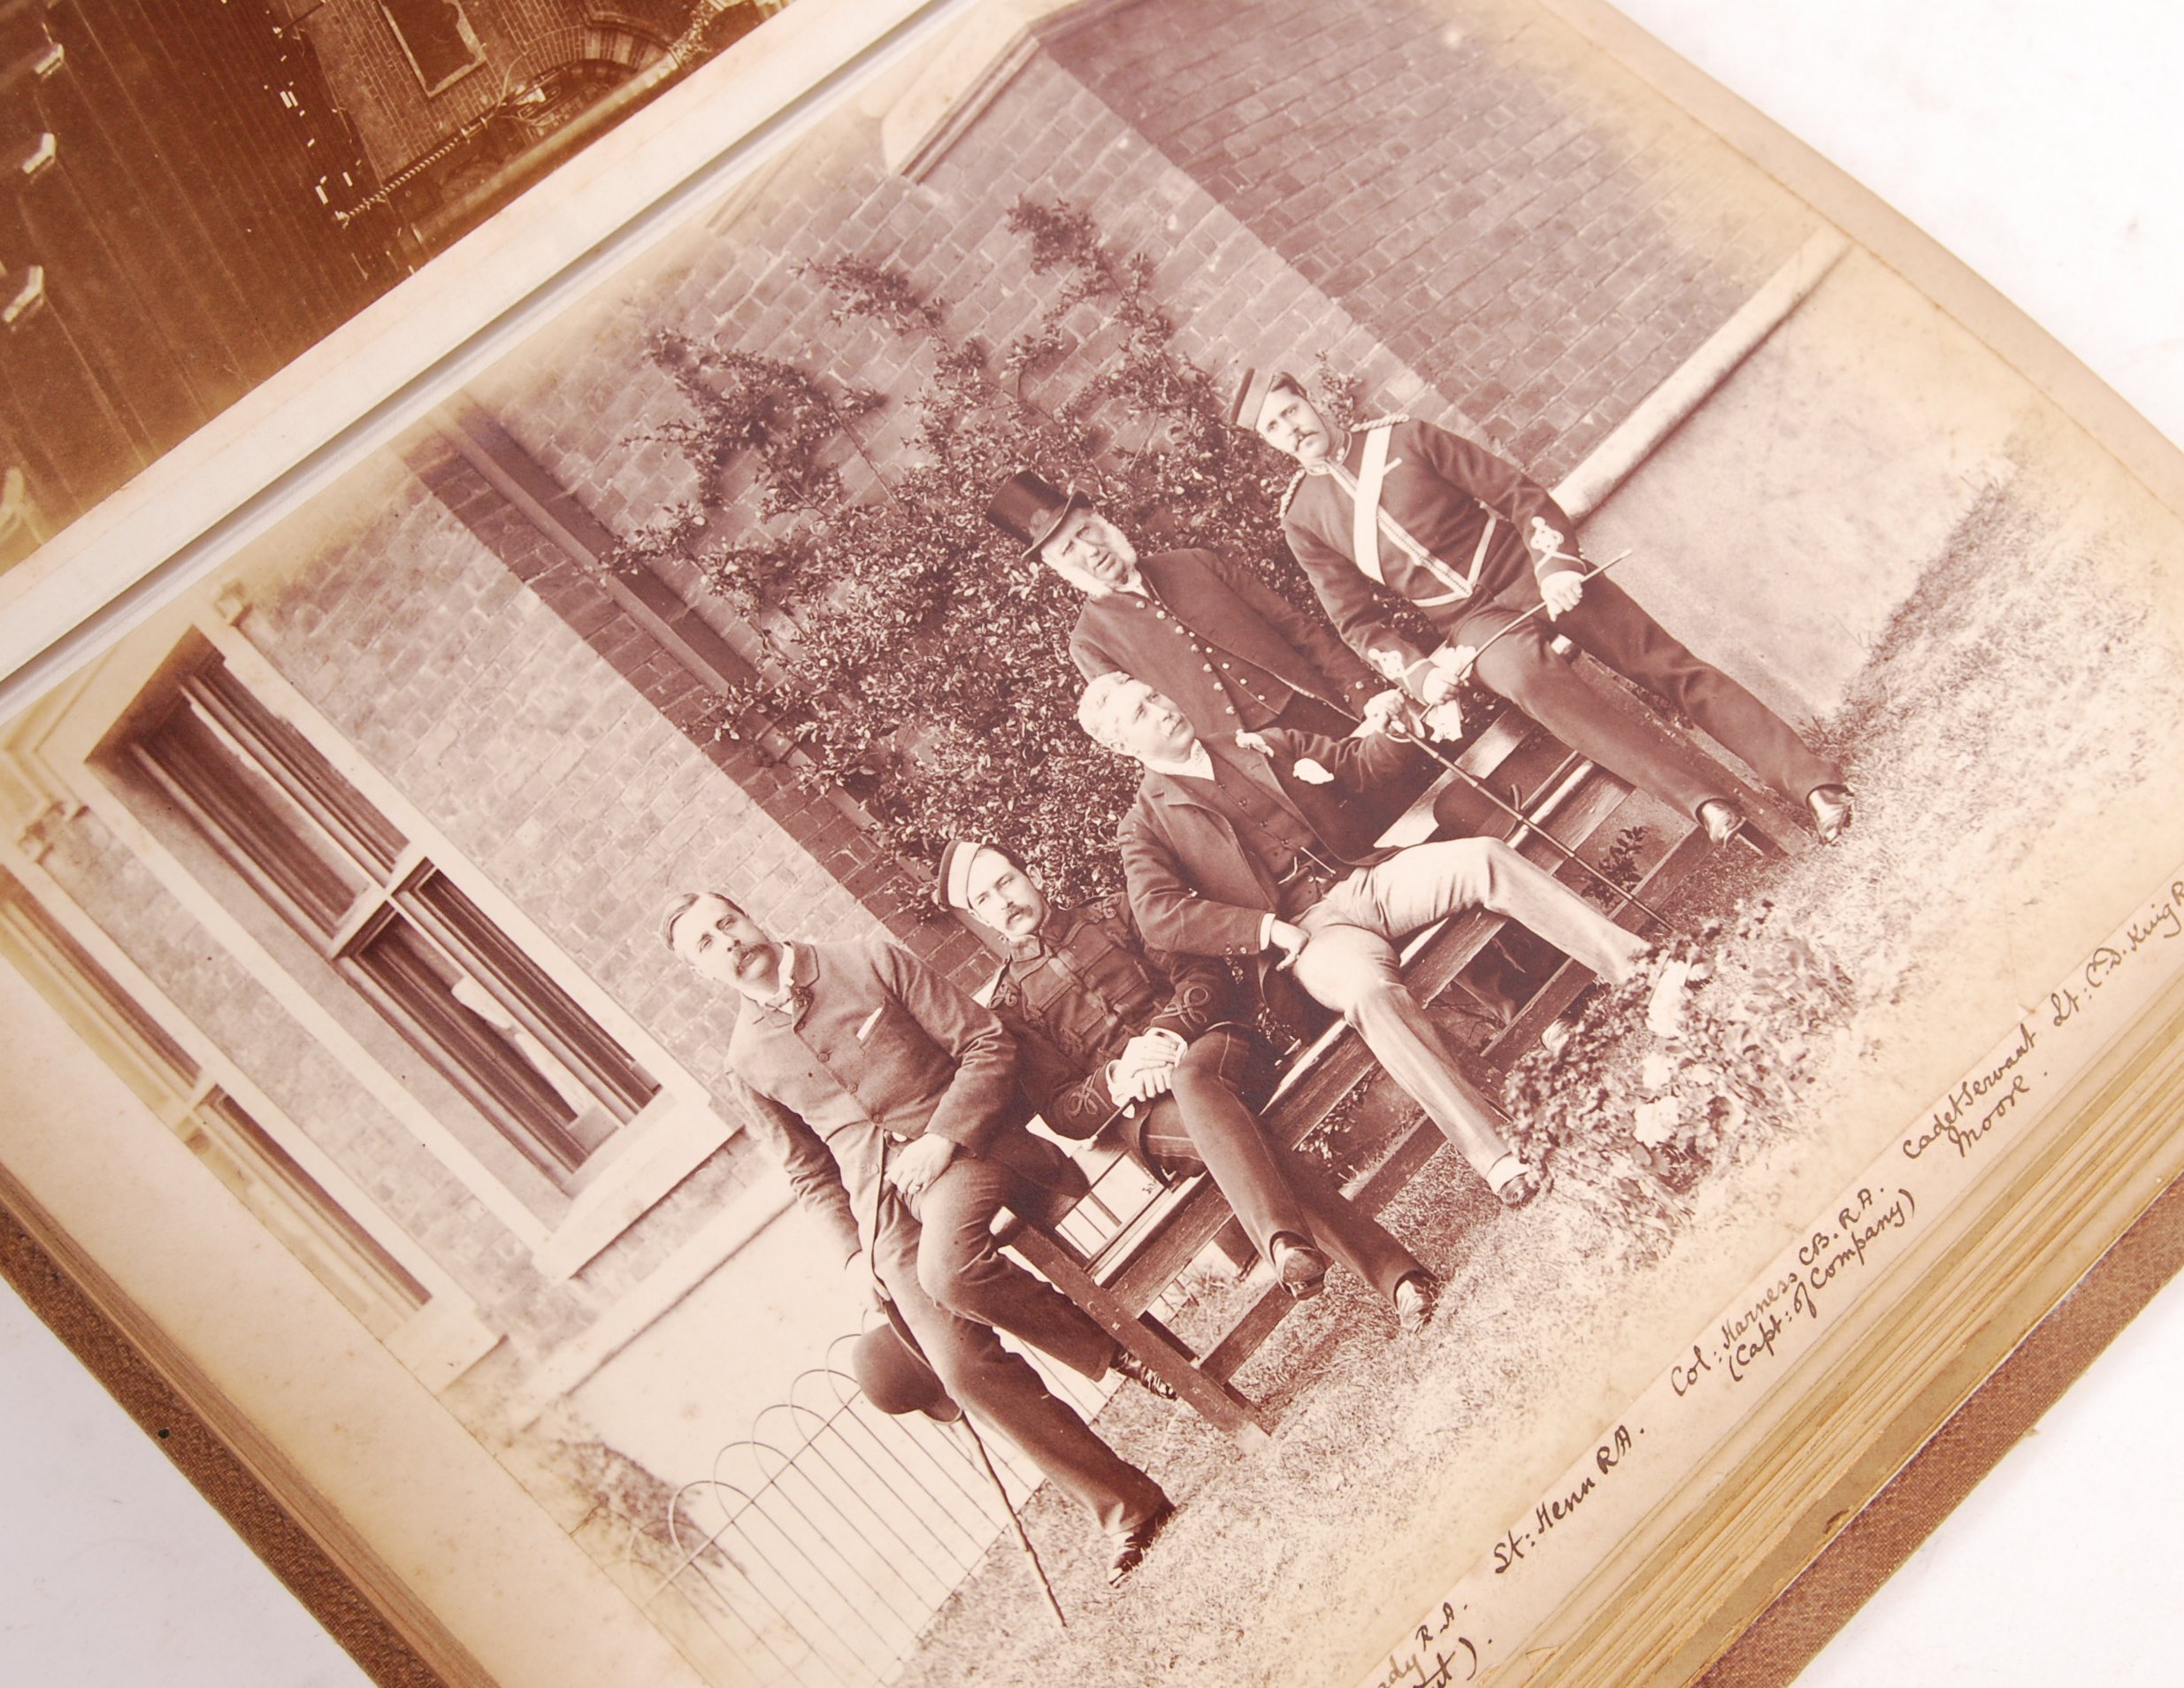 ANTIQUE 19TH CENTURY PHOTOGRAPH ALBUM ROYAL MILITA - Image 4 of 10